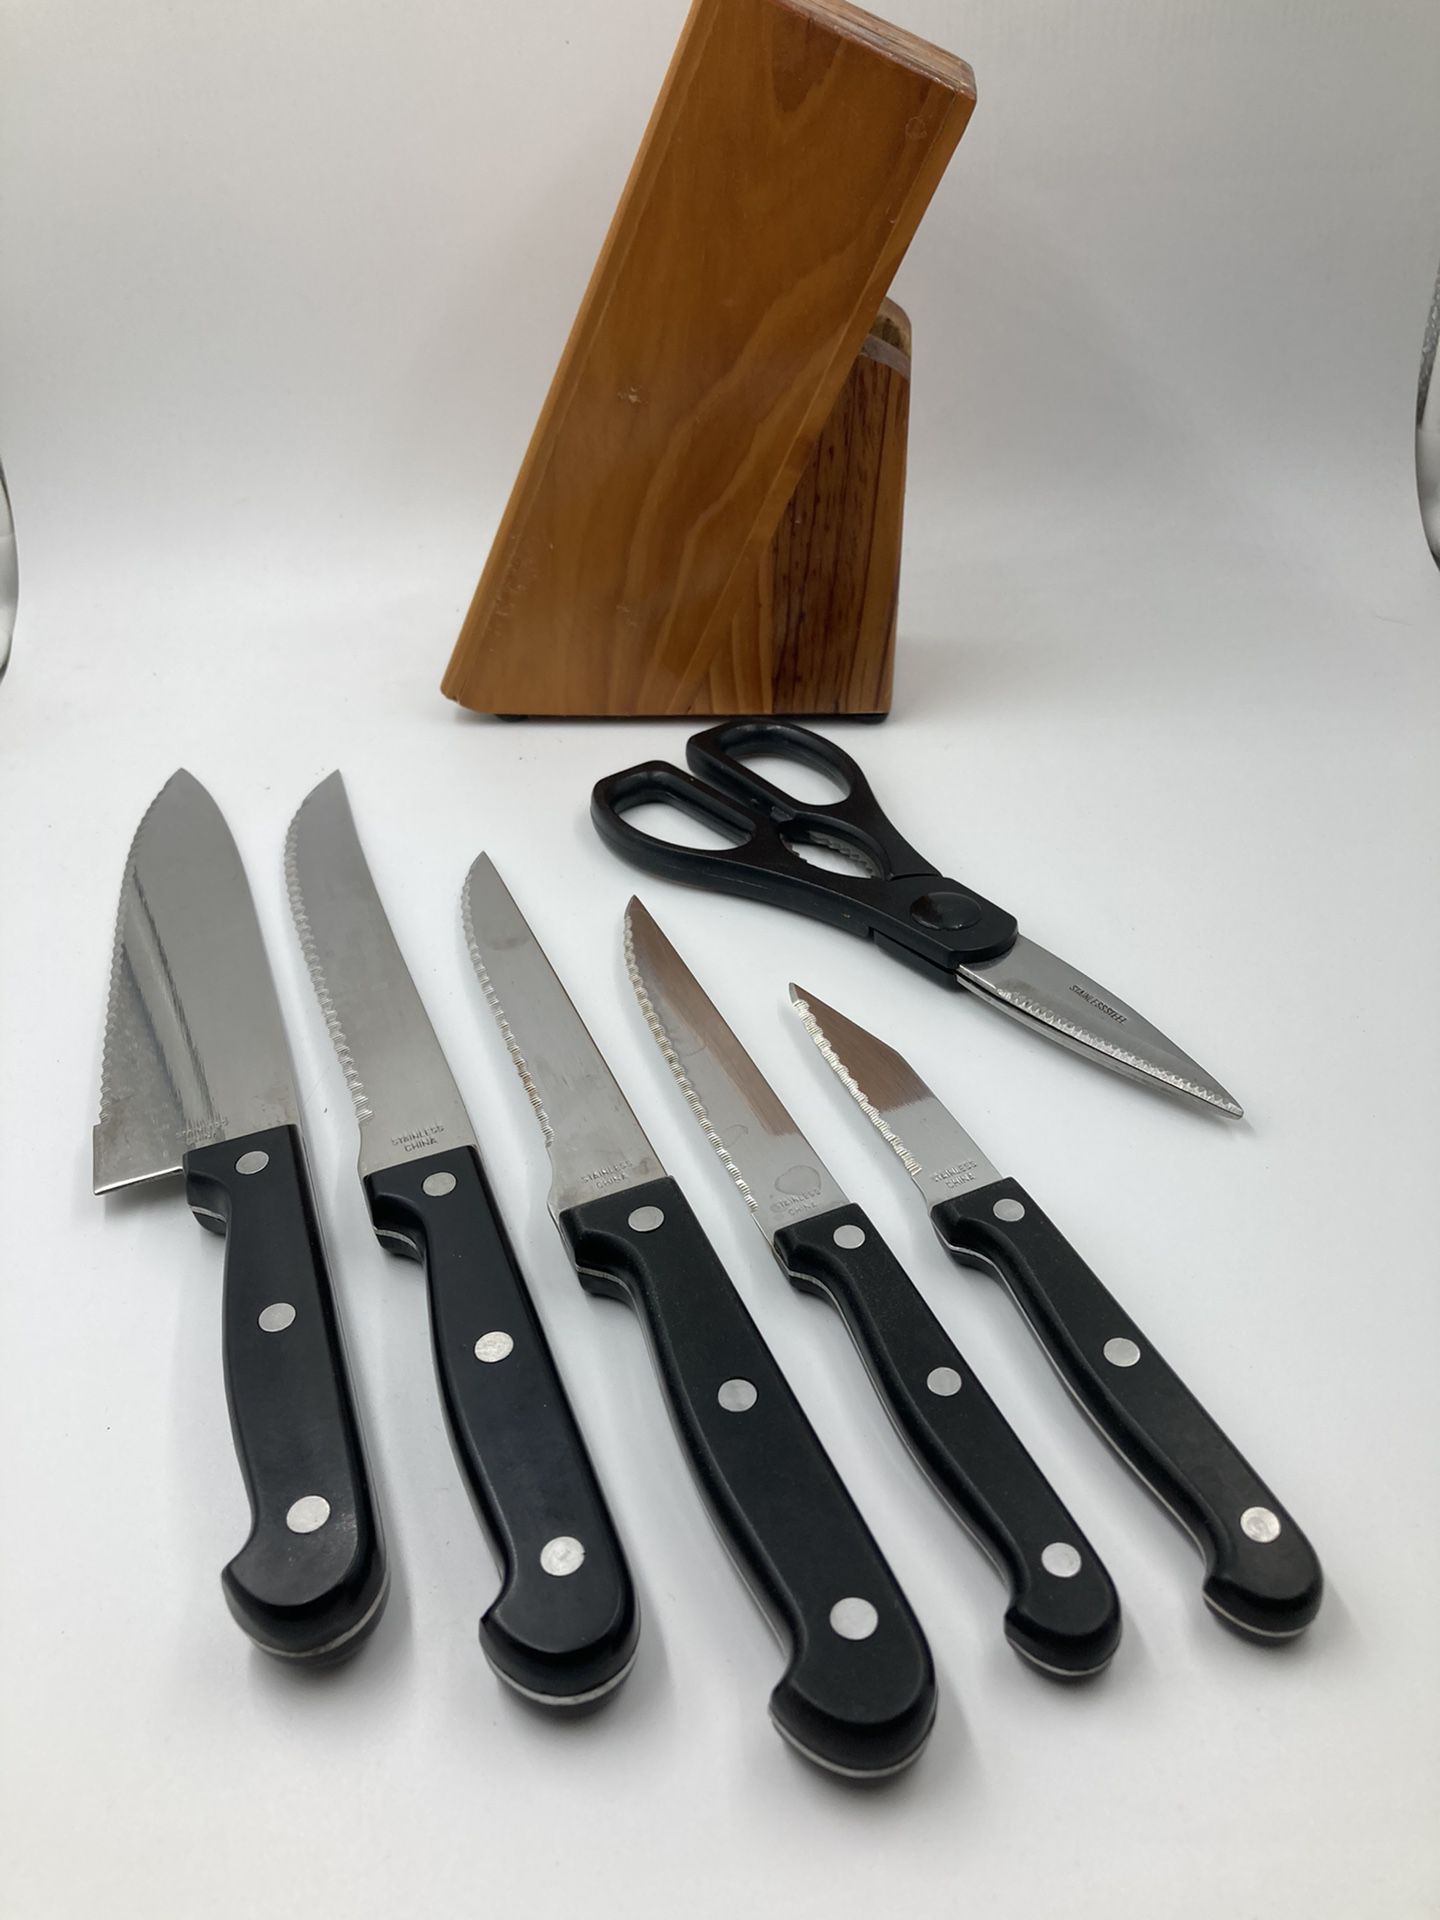 Hessler knife set for Sale in Spring Branch, TX - OfferUp